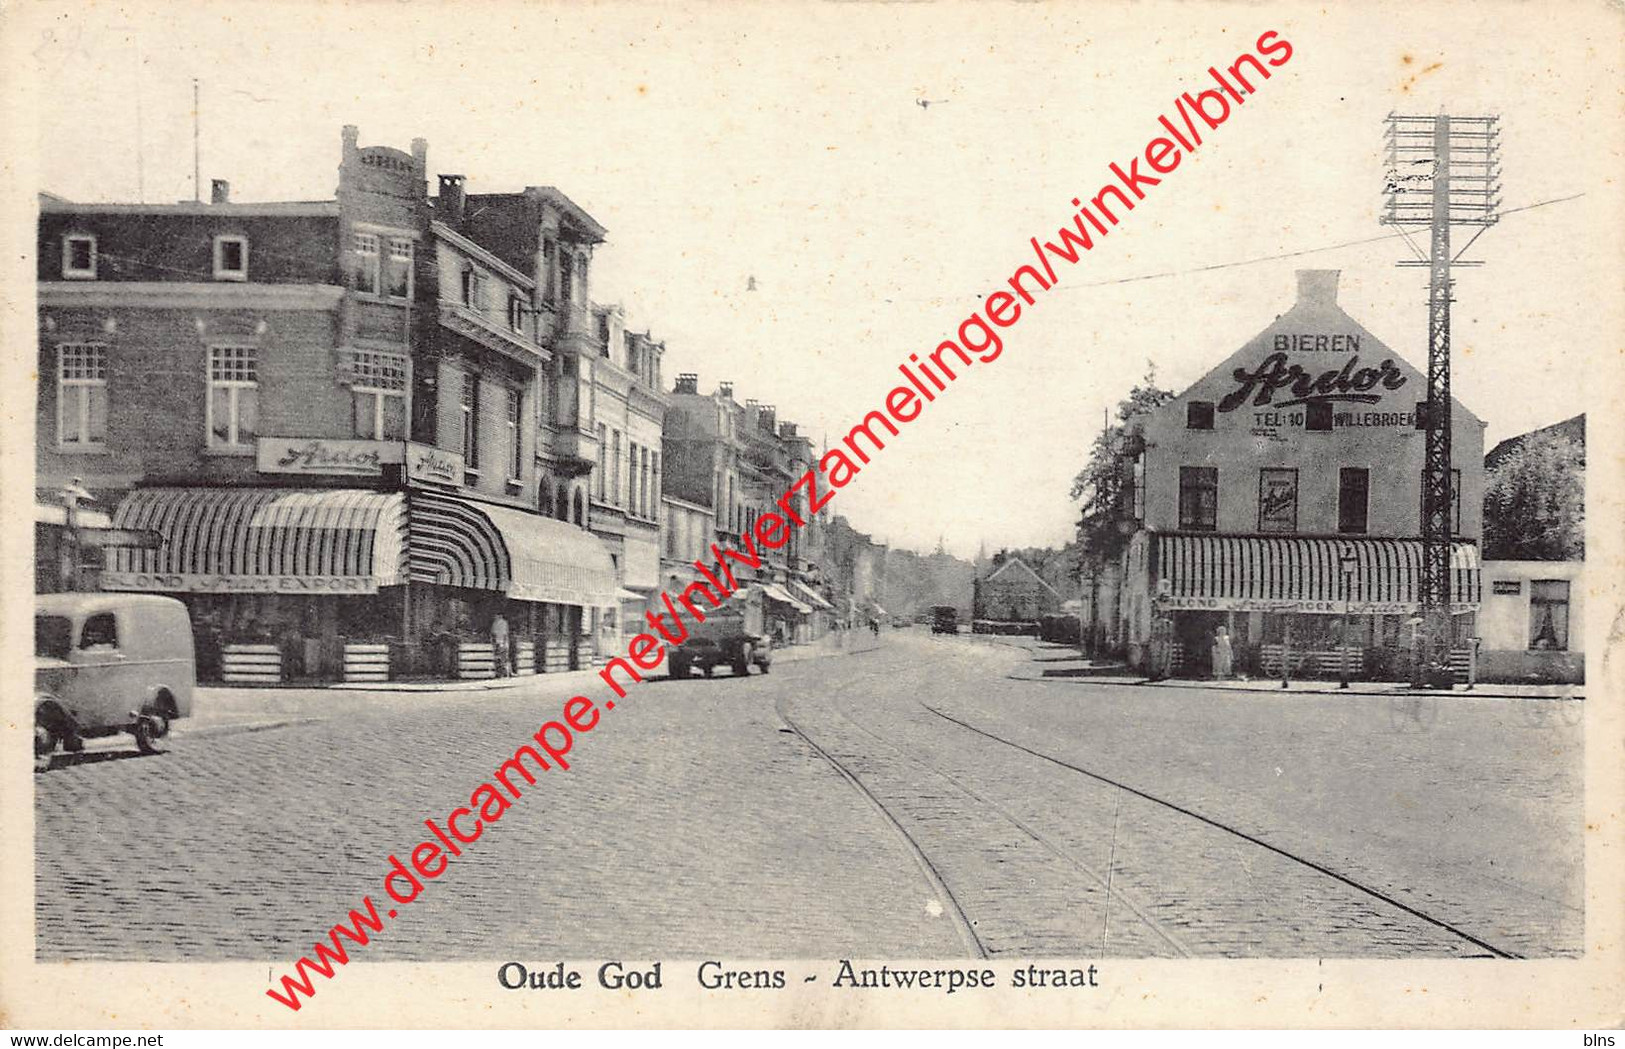 Oude-God Grens Antwerpsche Straat - Bieren Ardor - Mortsel - Mortsel